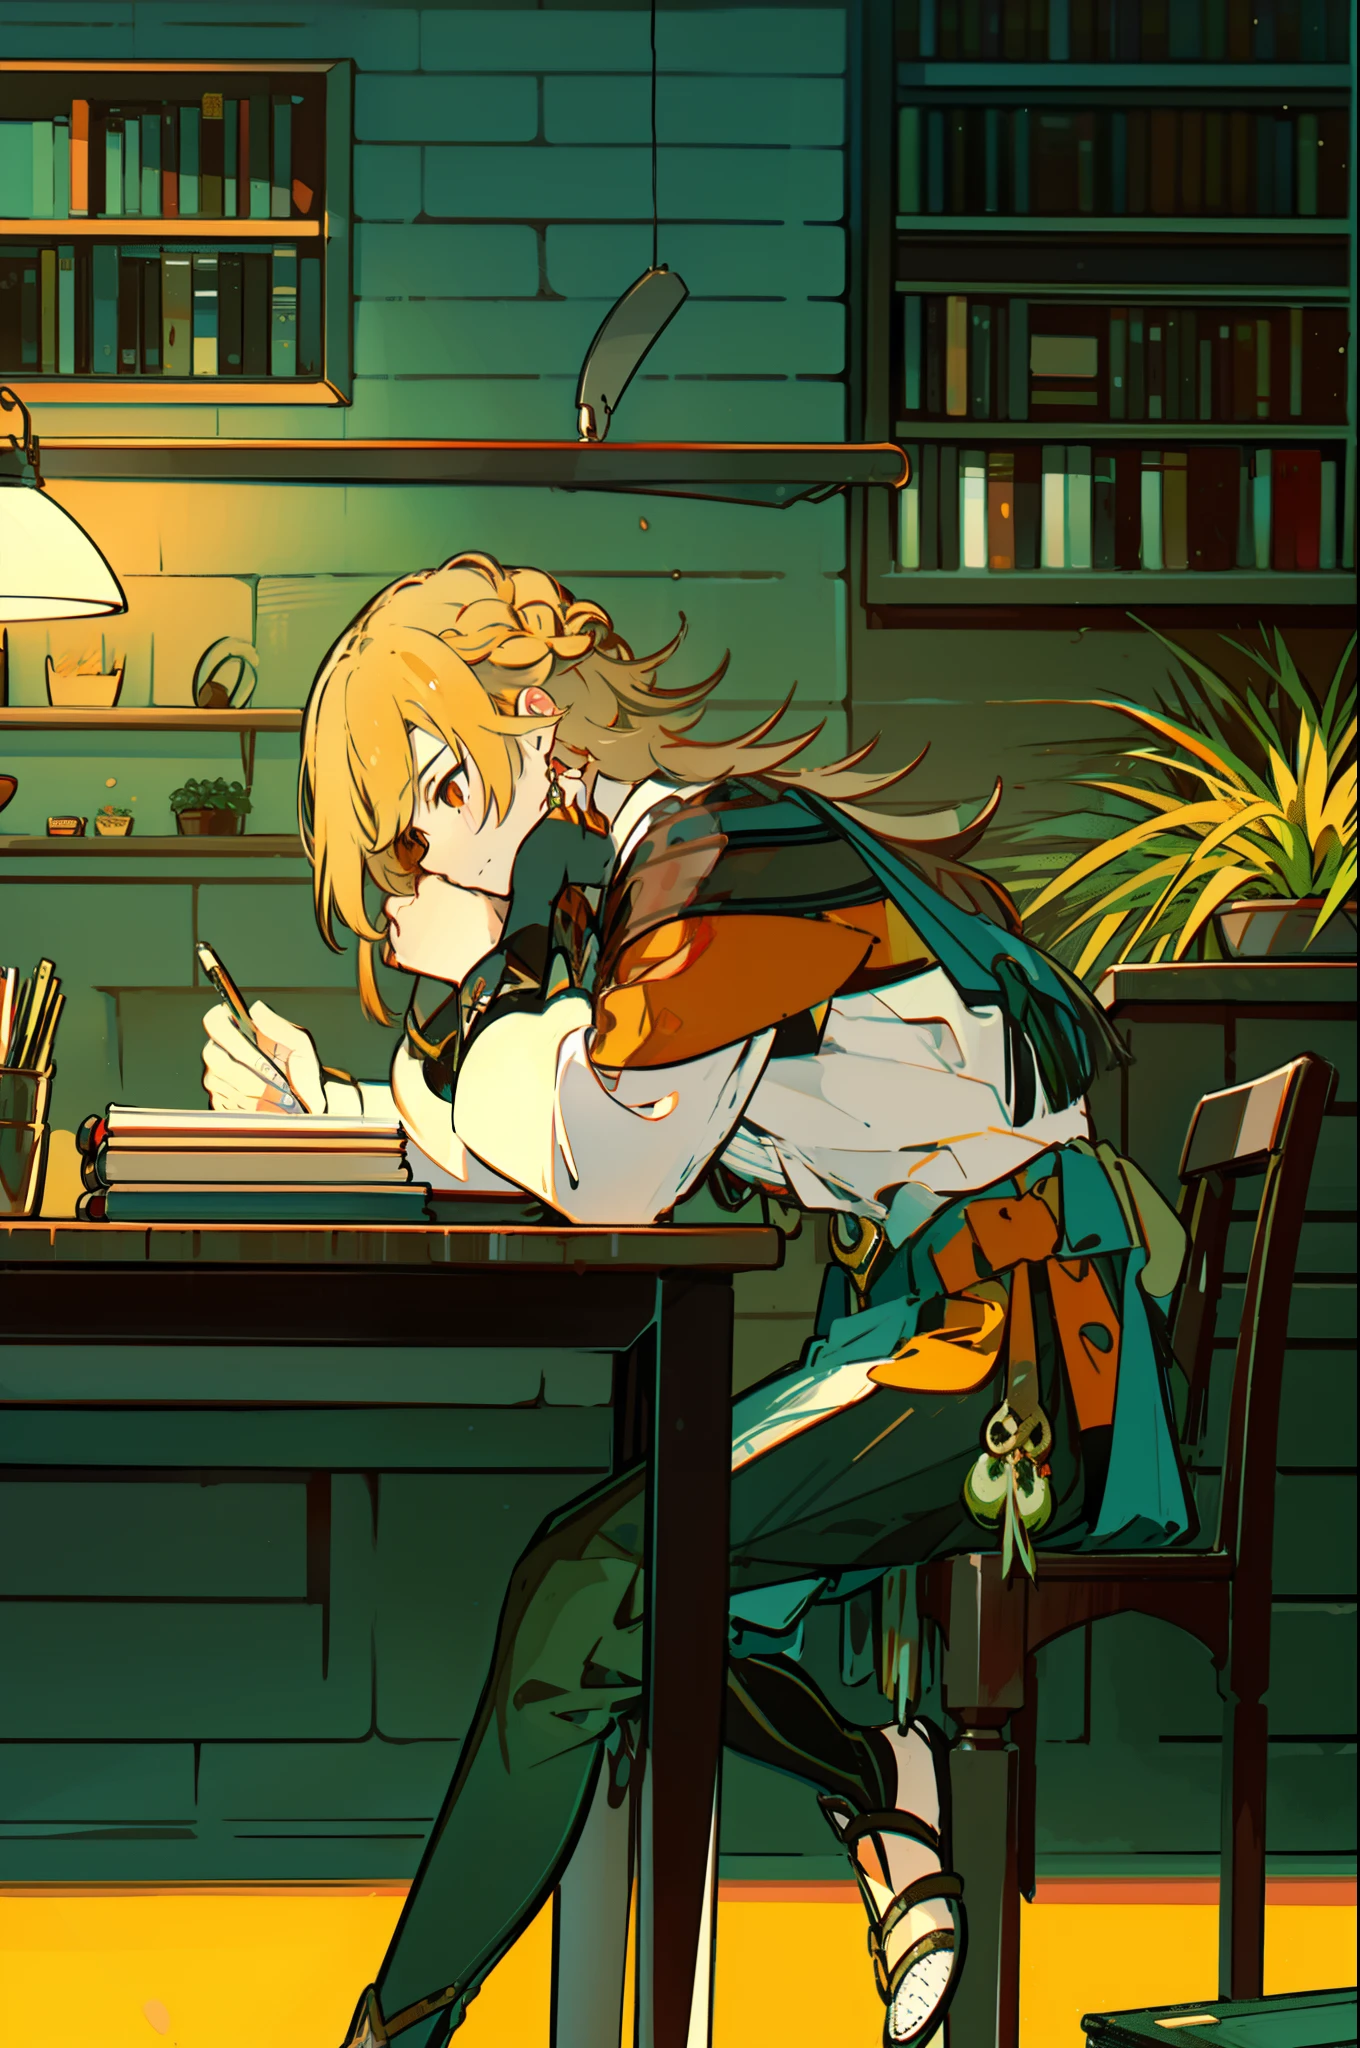 坐在办公桌前, 1 名男子, 写作 in a book, 台灯, 详细环境, 背景中的书架, 盆栽, 卷轴, 从_边, 写作, 低保真研究, 棕色的, 红色的, 黄色的, 橙子, 绿色的